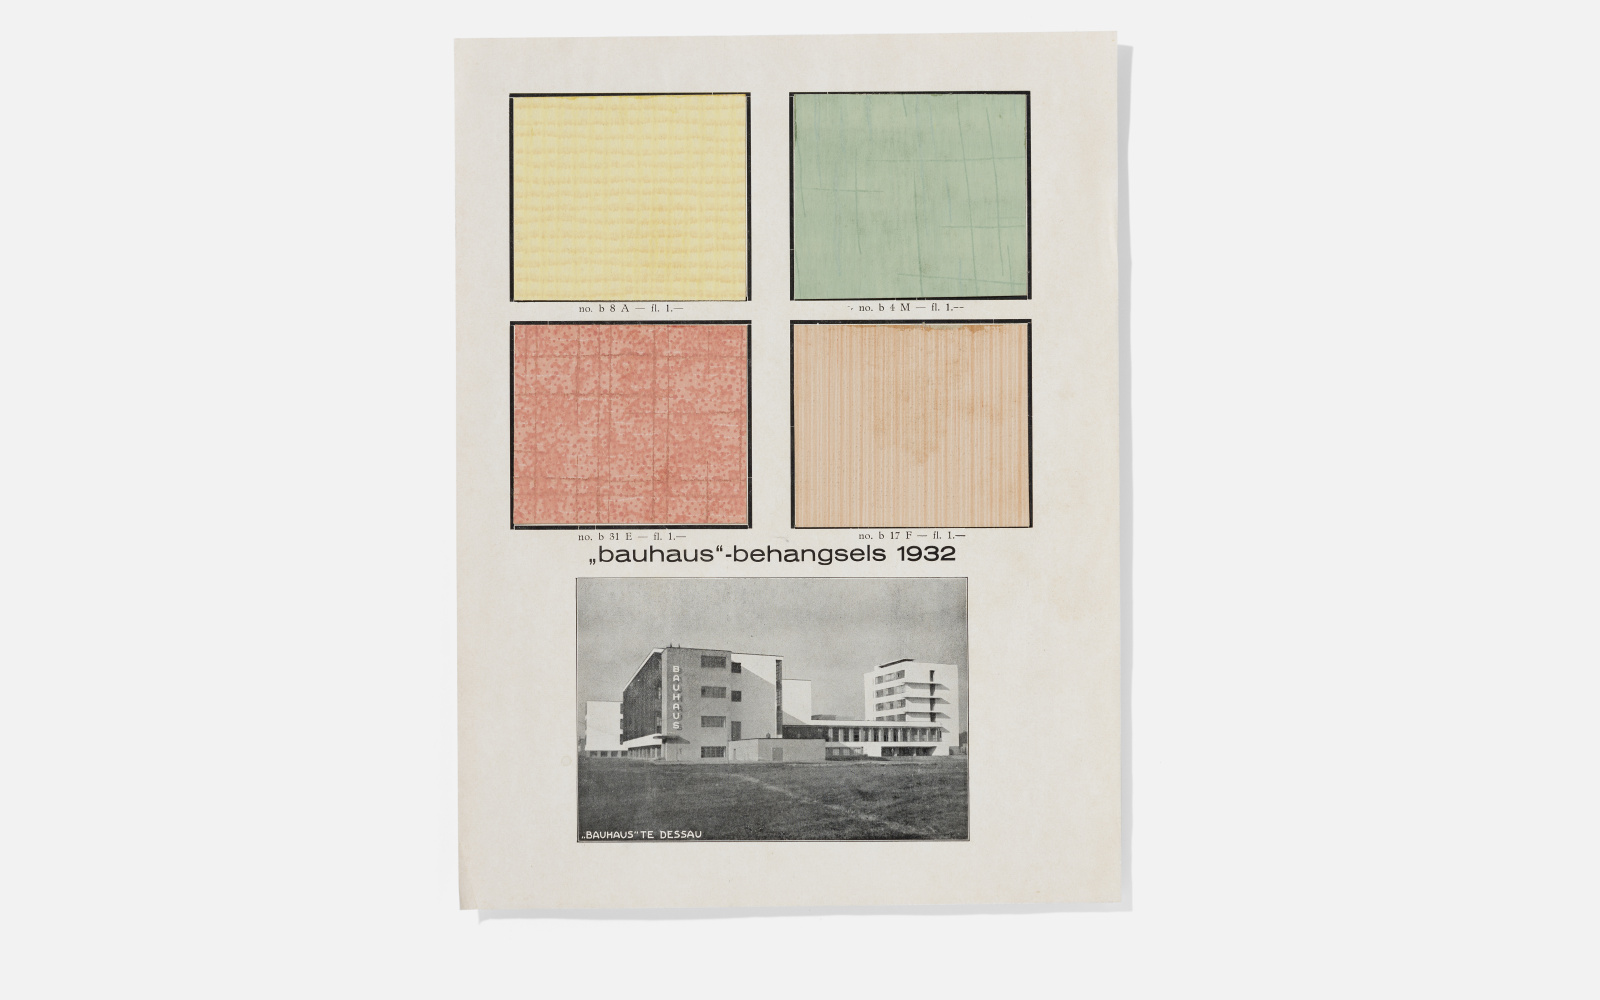 Werbeblatt für die Niederlande mit vier verschiedenen Tapetenmustern. Darunter ist ein schwarz-weiß Bild des Bauhaus Dessau